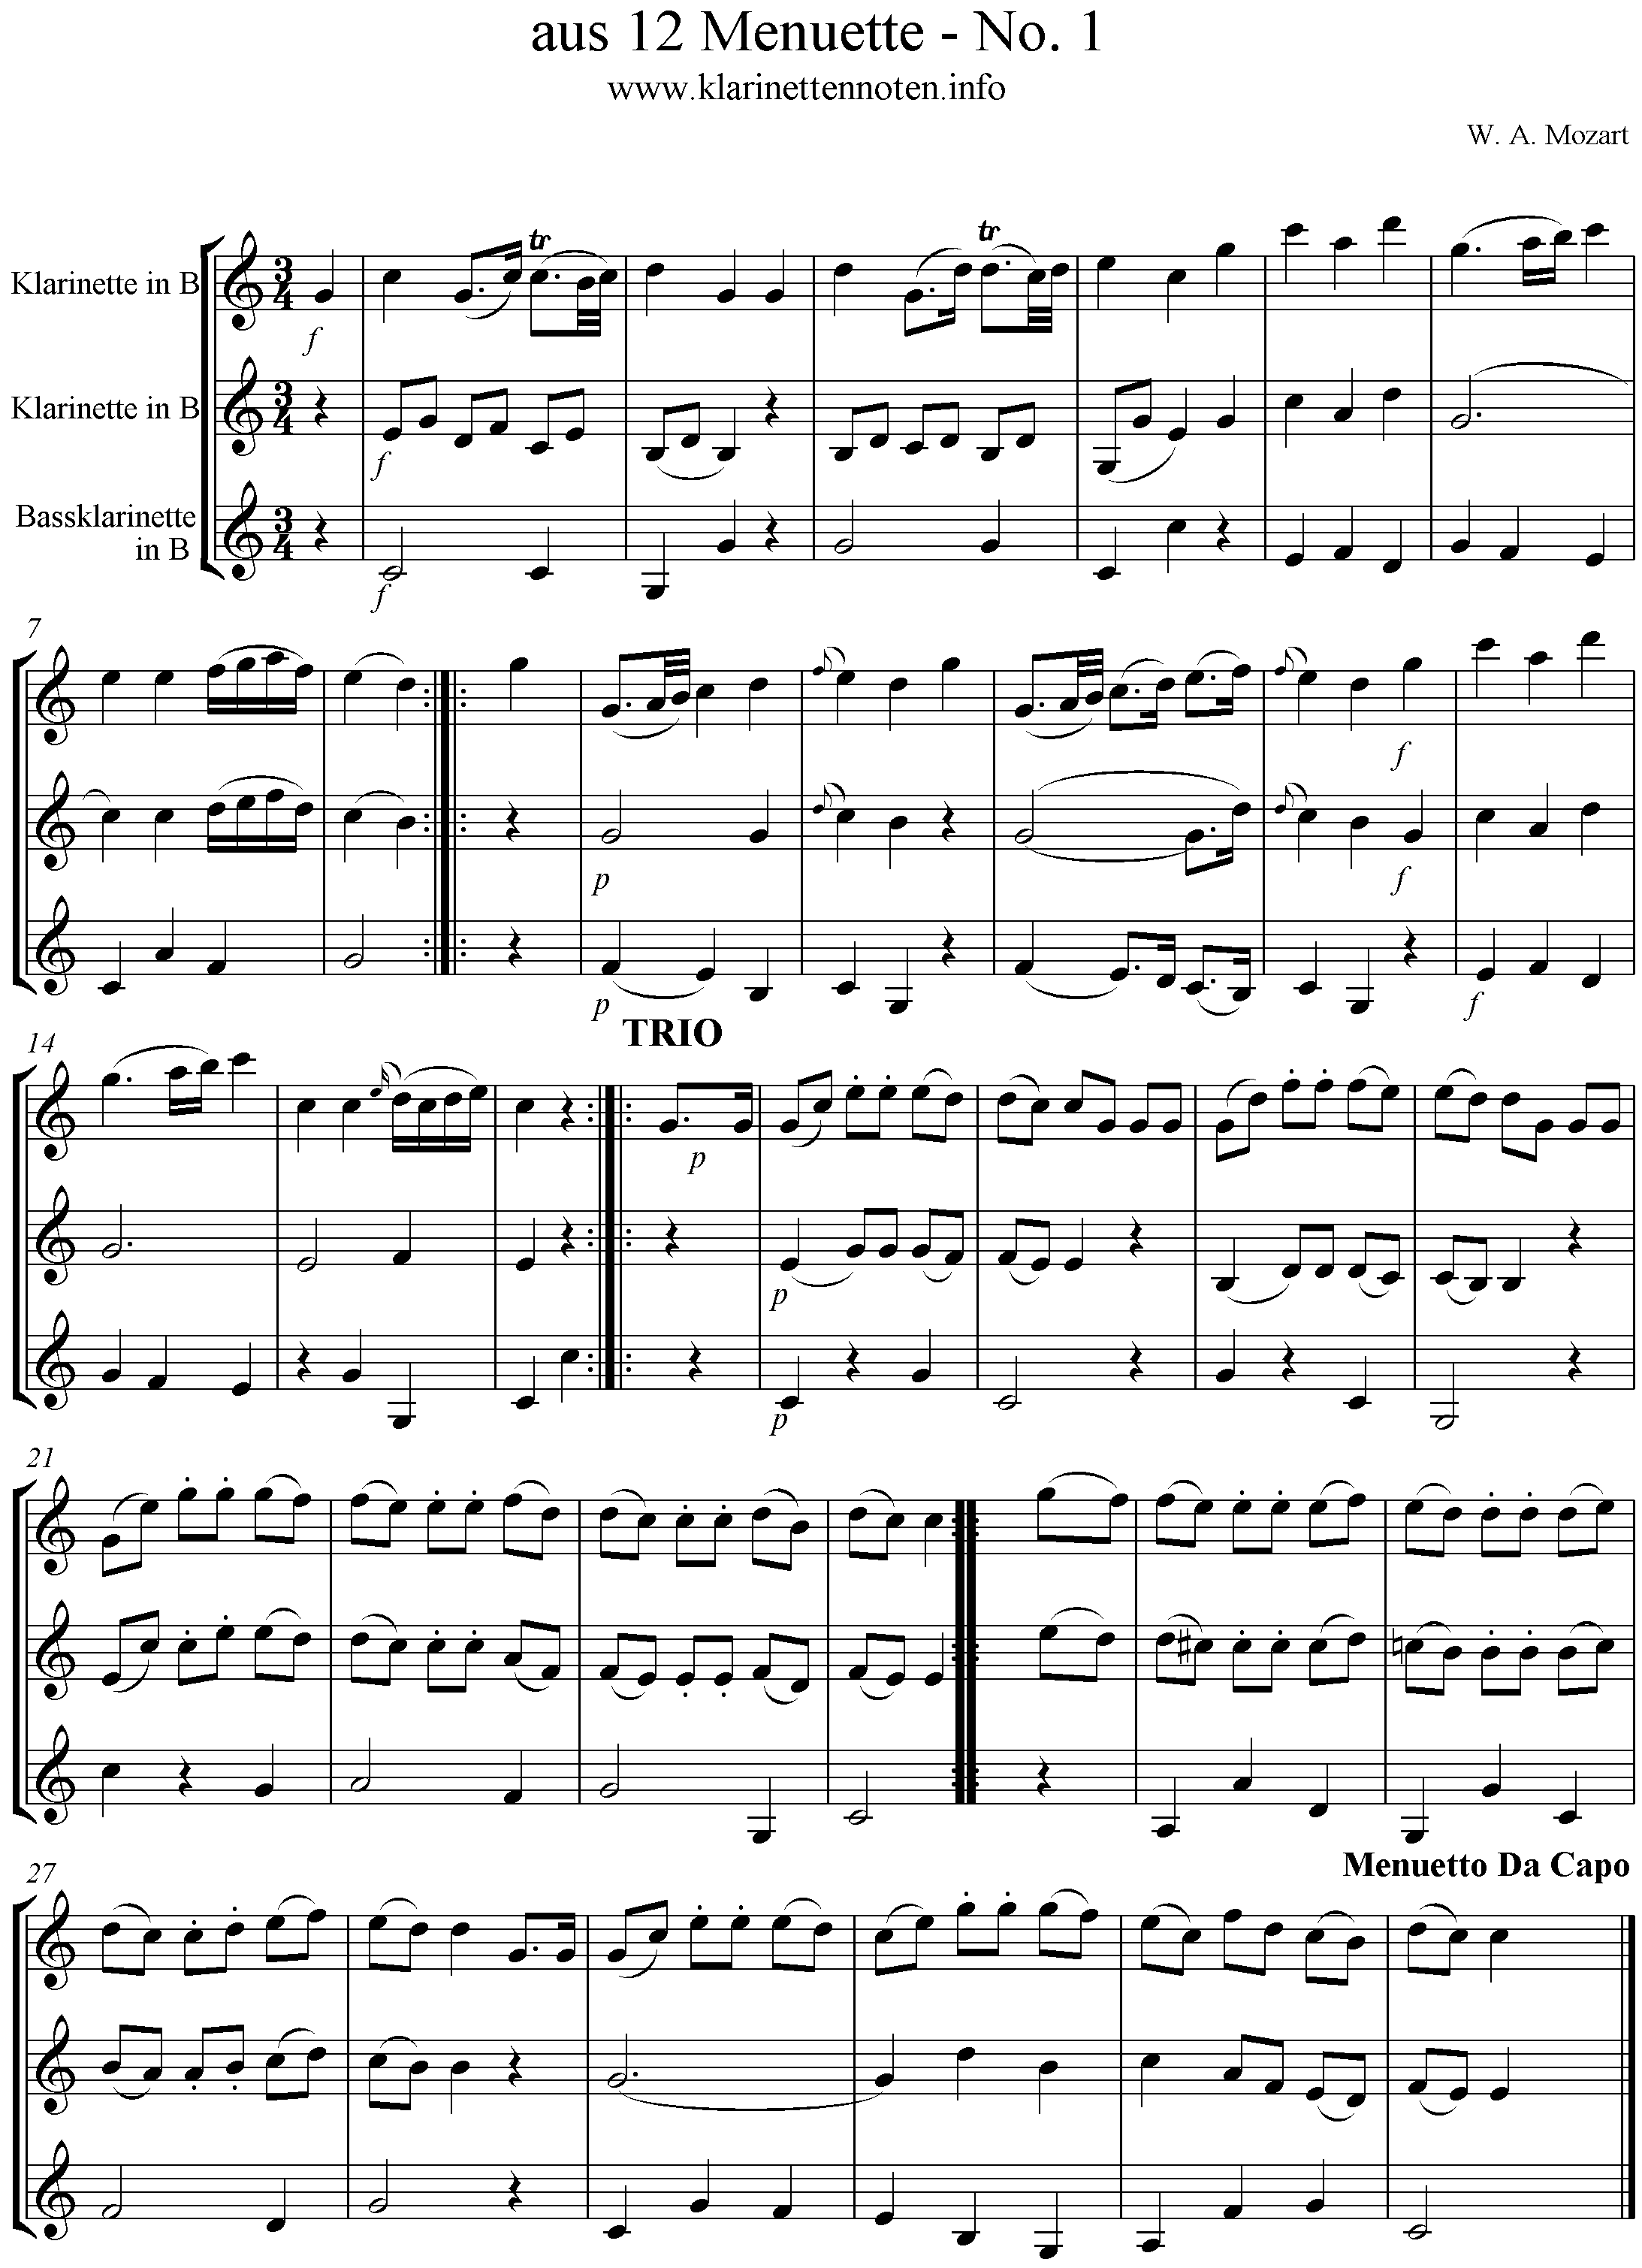 aus 12 Menuette - No.1 - W. A. Mozart